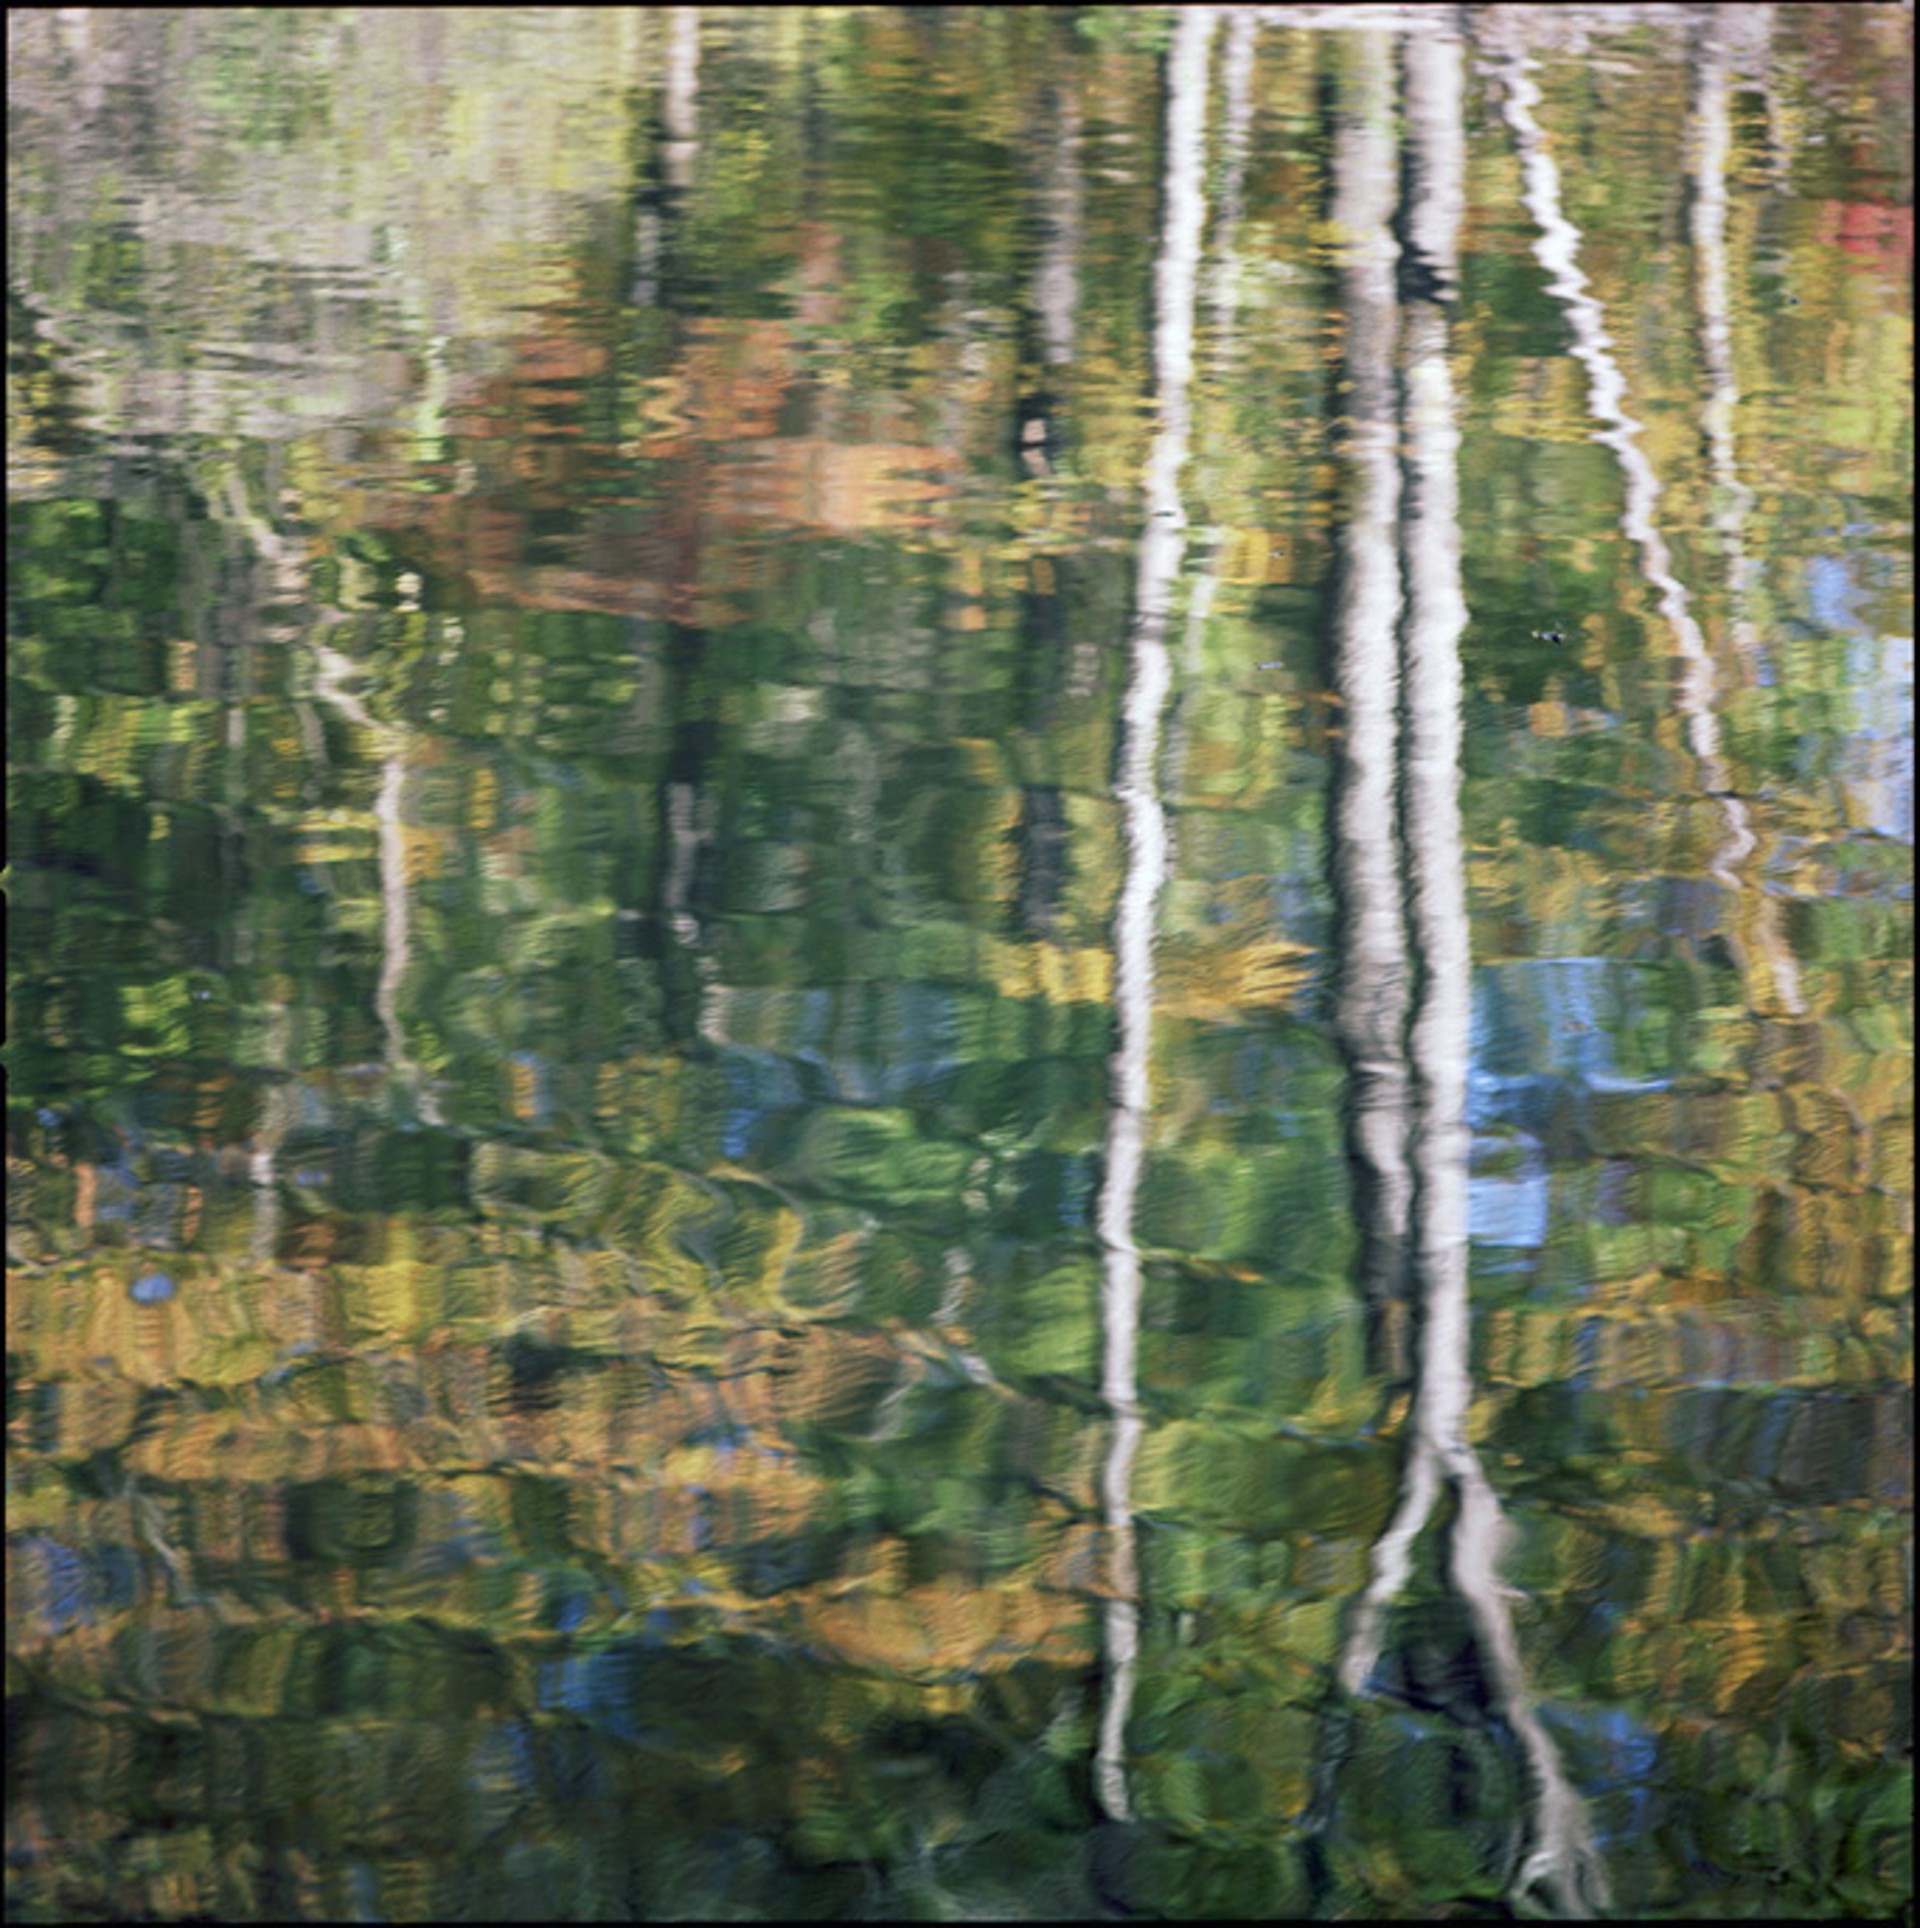 Sweetwater Creek Reflection by Kathryn Kolb